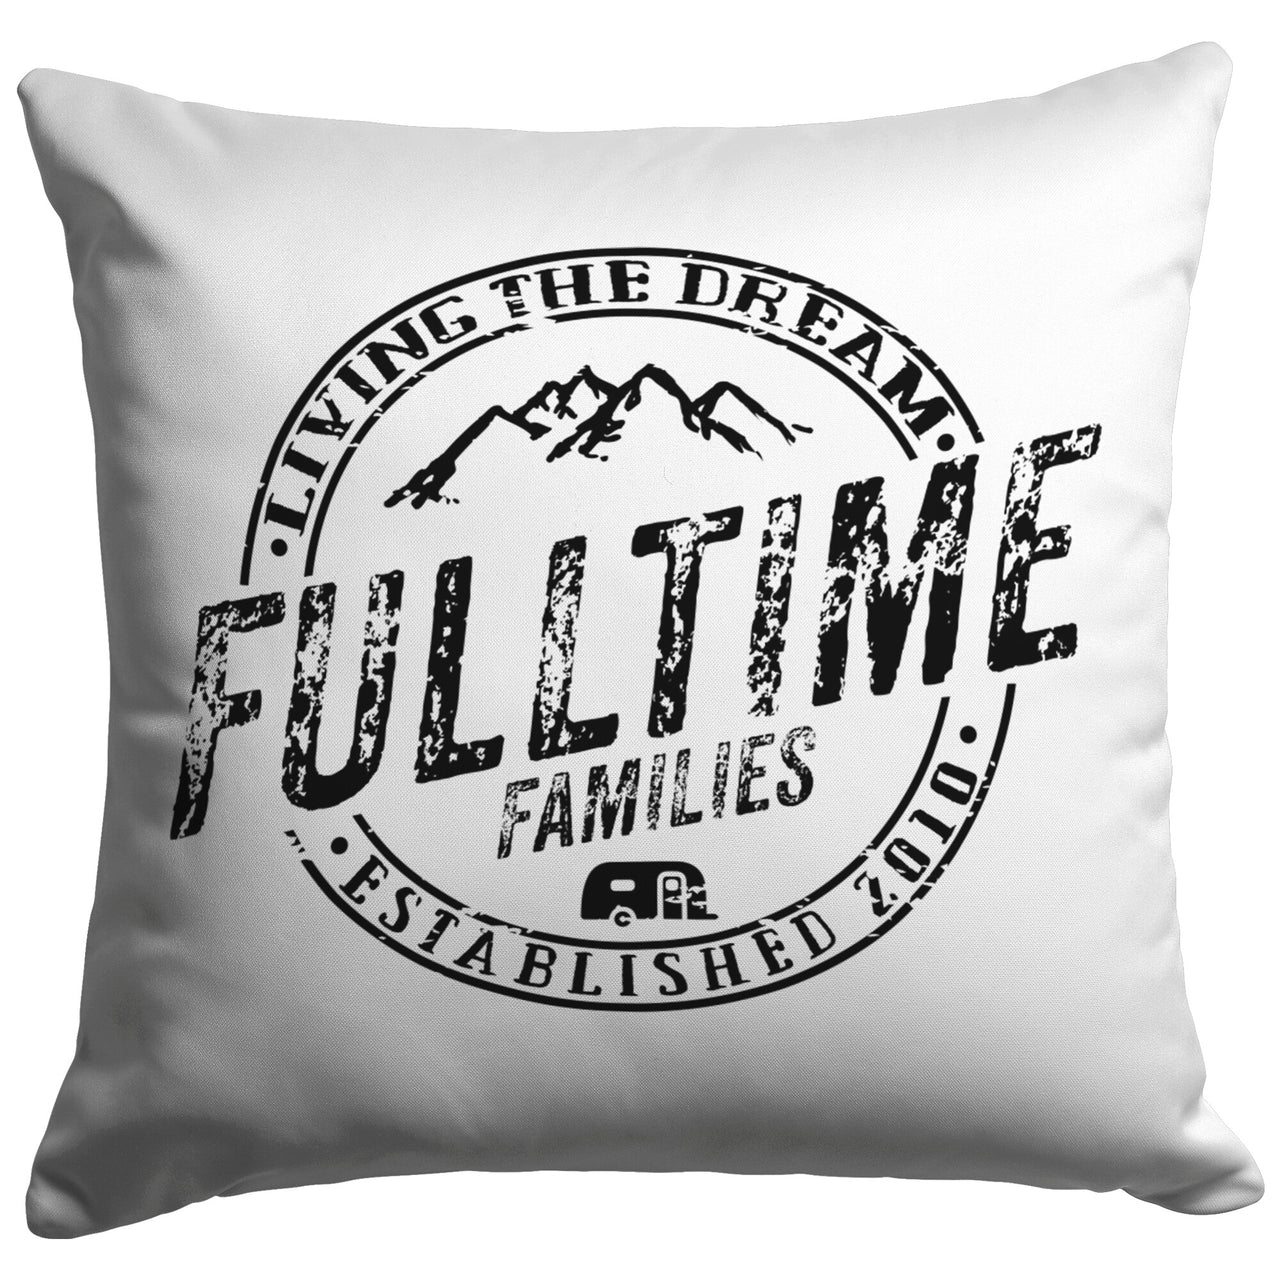 Fulltime Living The Dream - Fulltime Families Pillow